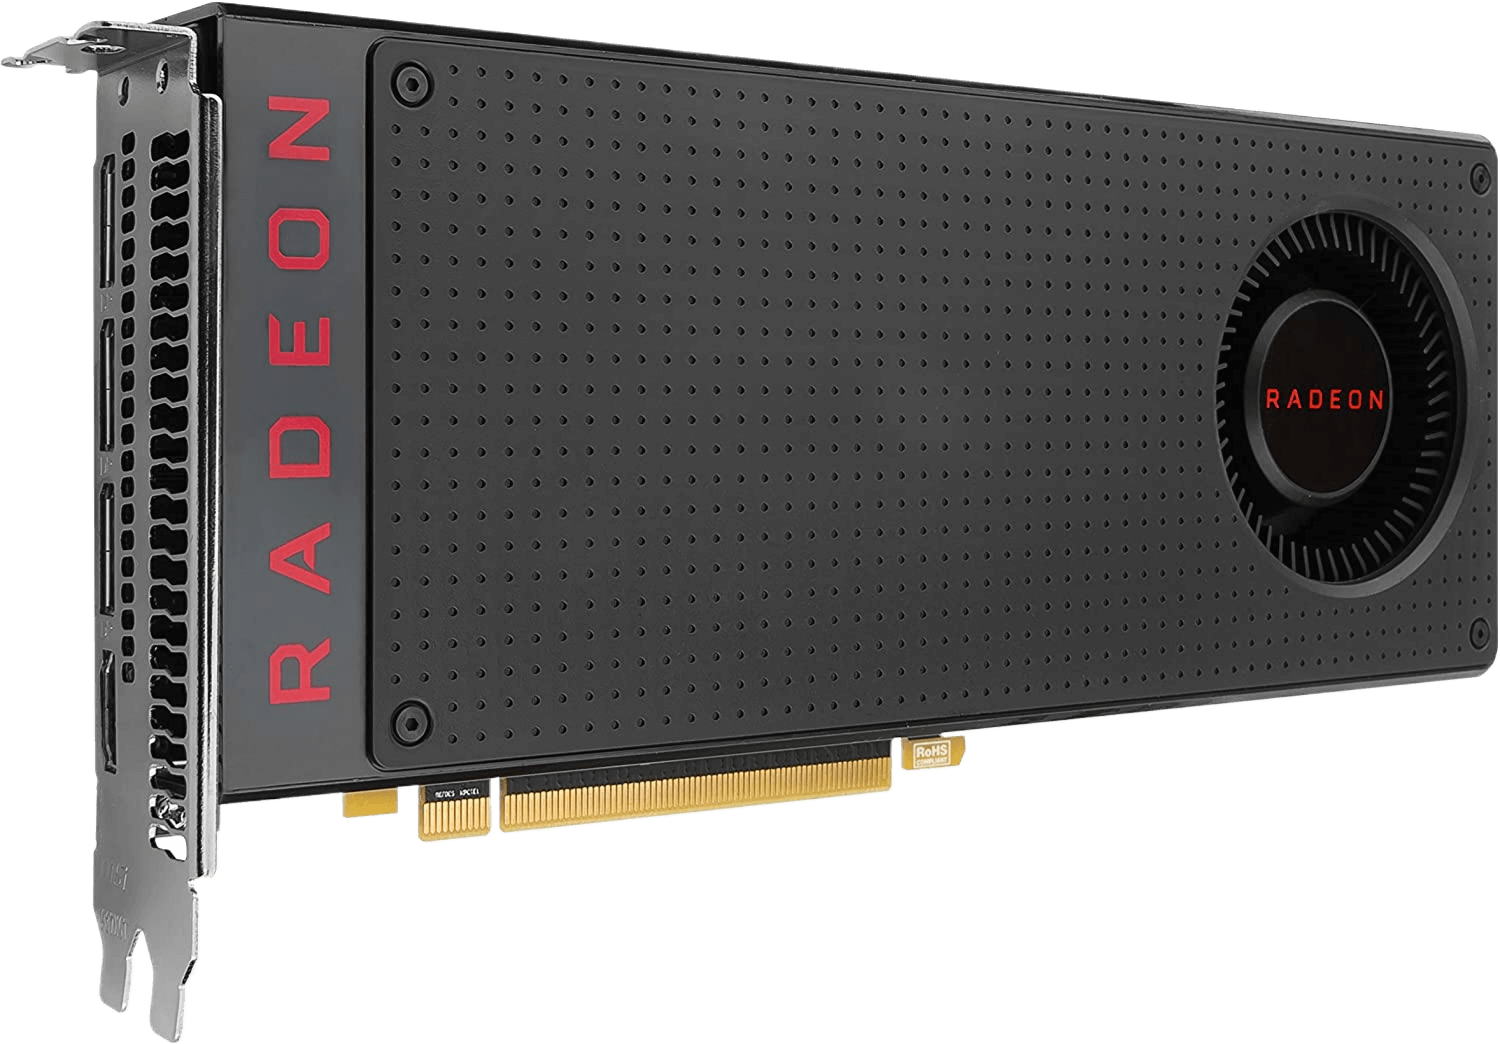 MSI Radeon RX 480 4GB 256-Bit GDDR5 PCI Express 3.0 x16 Graphics Card